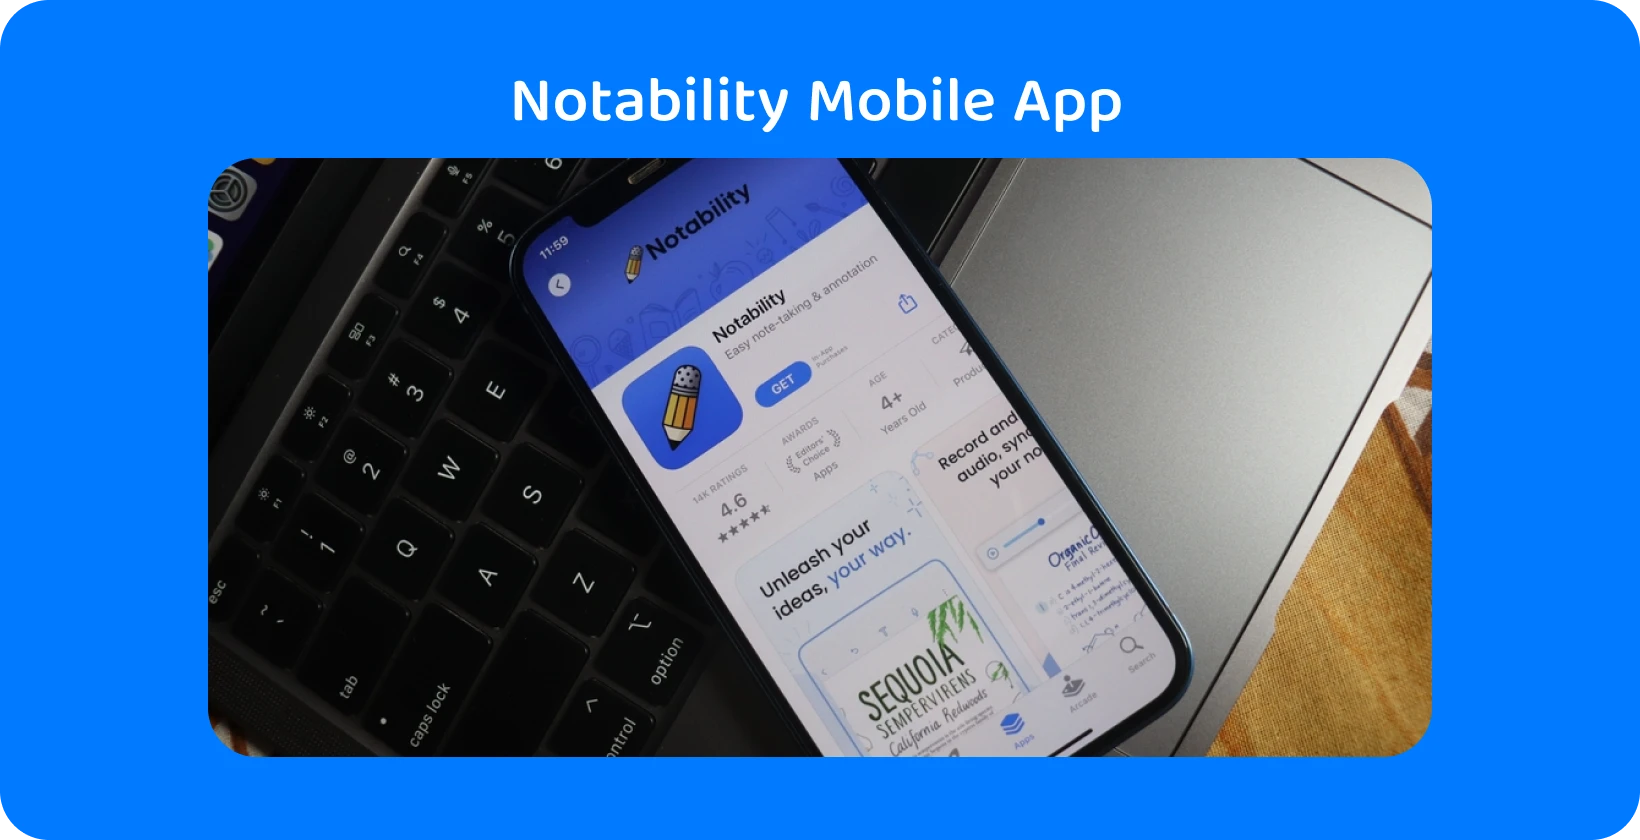 Notability aplikácia na obrazovke smartfónu s funkciou prepisu, ktorá predstavuje možnosti prevodu zvuku na text.